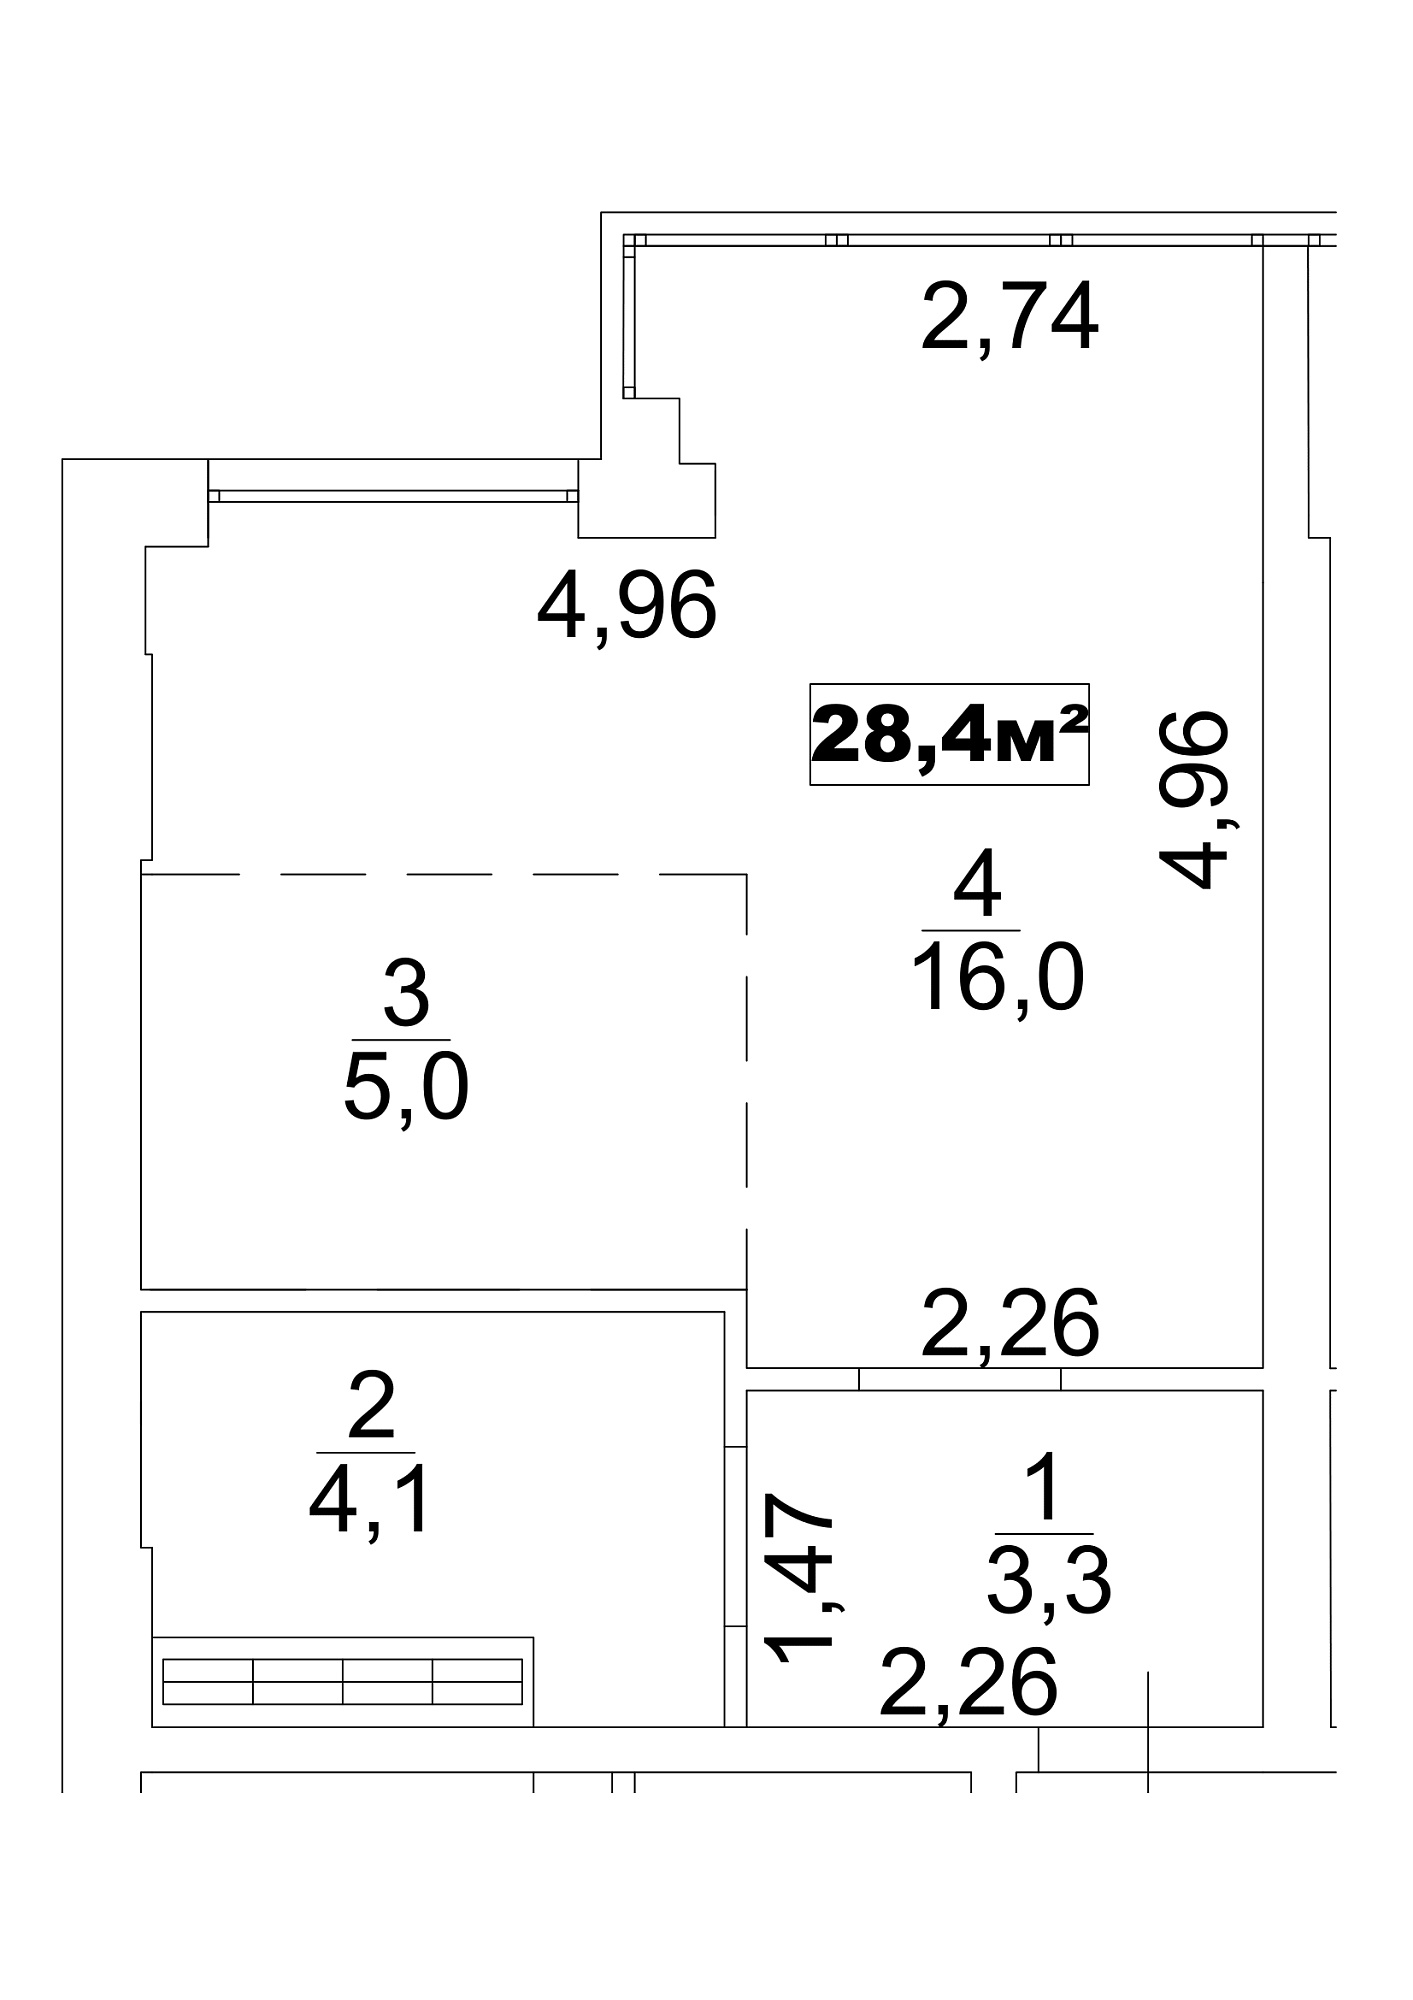 Планування Smart-квартира площею 28.4м2, AB-13-05/0036б.